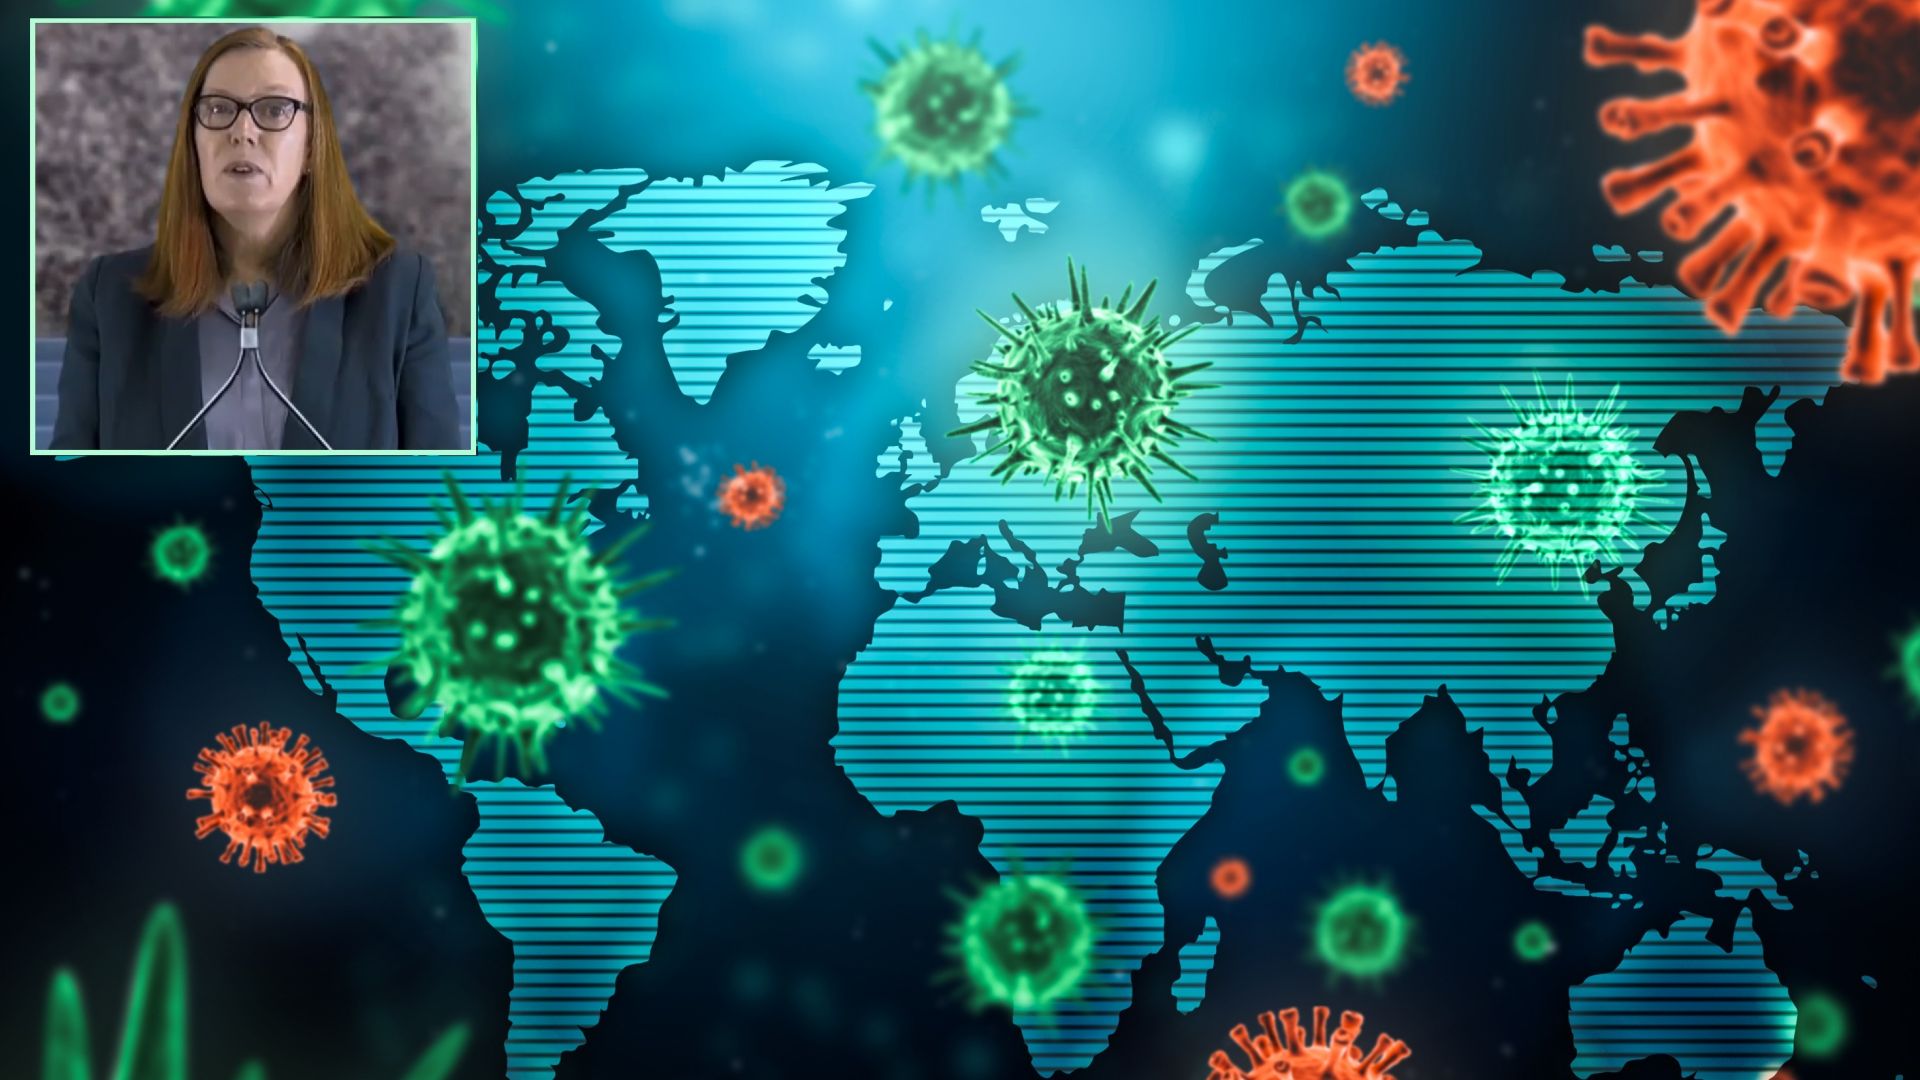 Създателката на "Астра Зенека": Следващата пандемия може да е по-смъртоносна